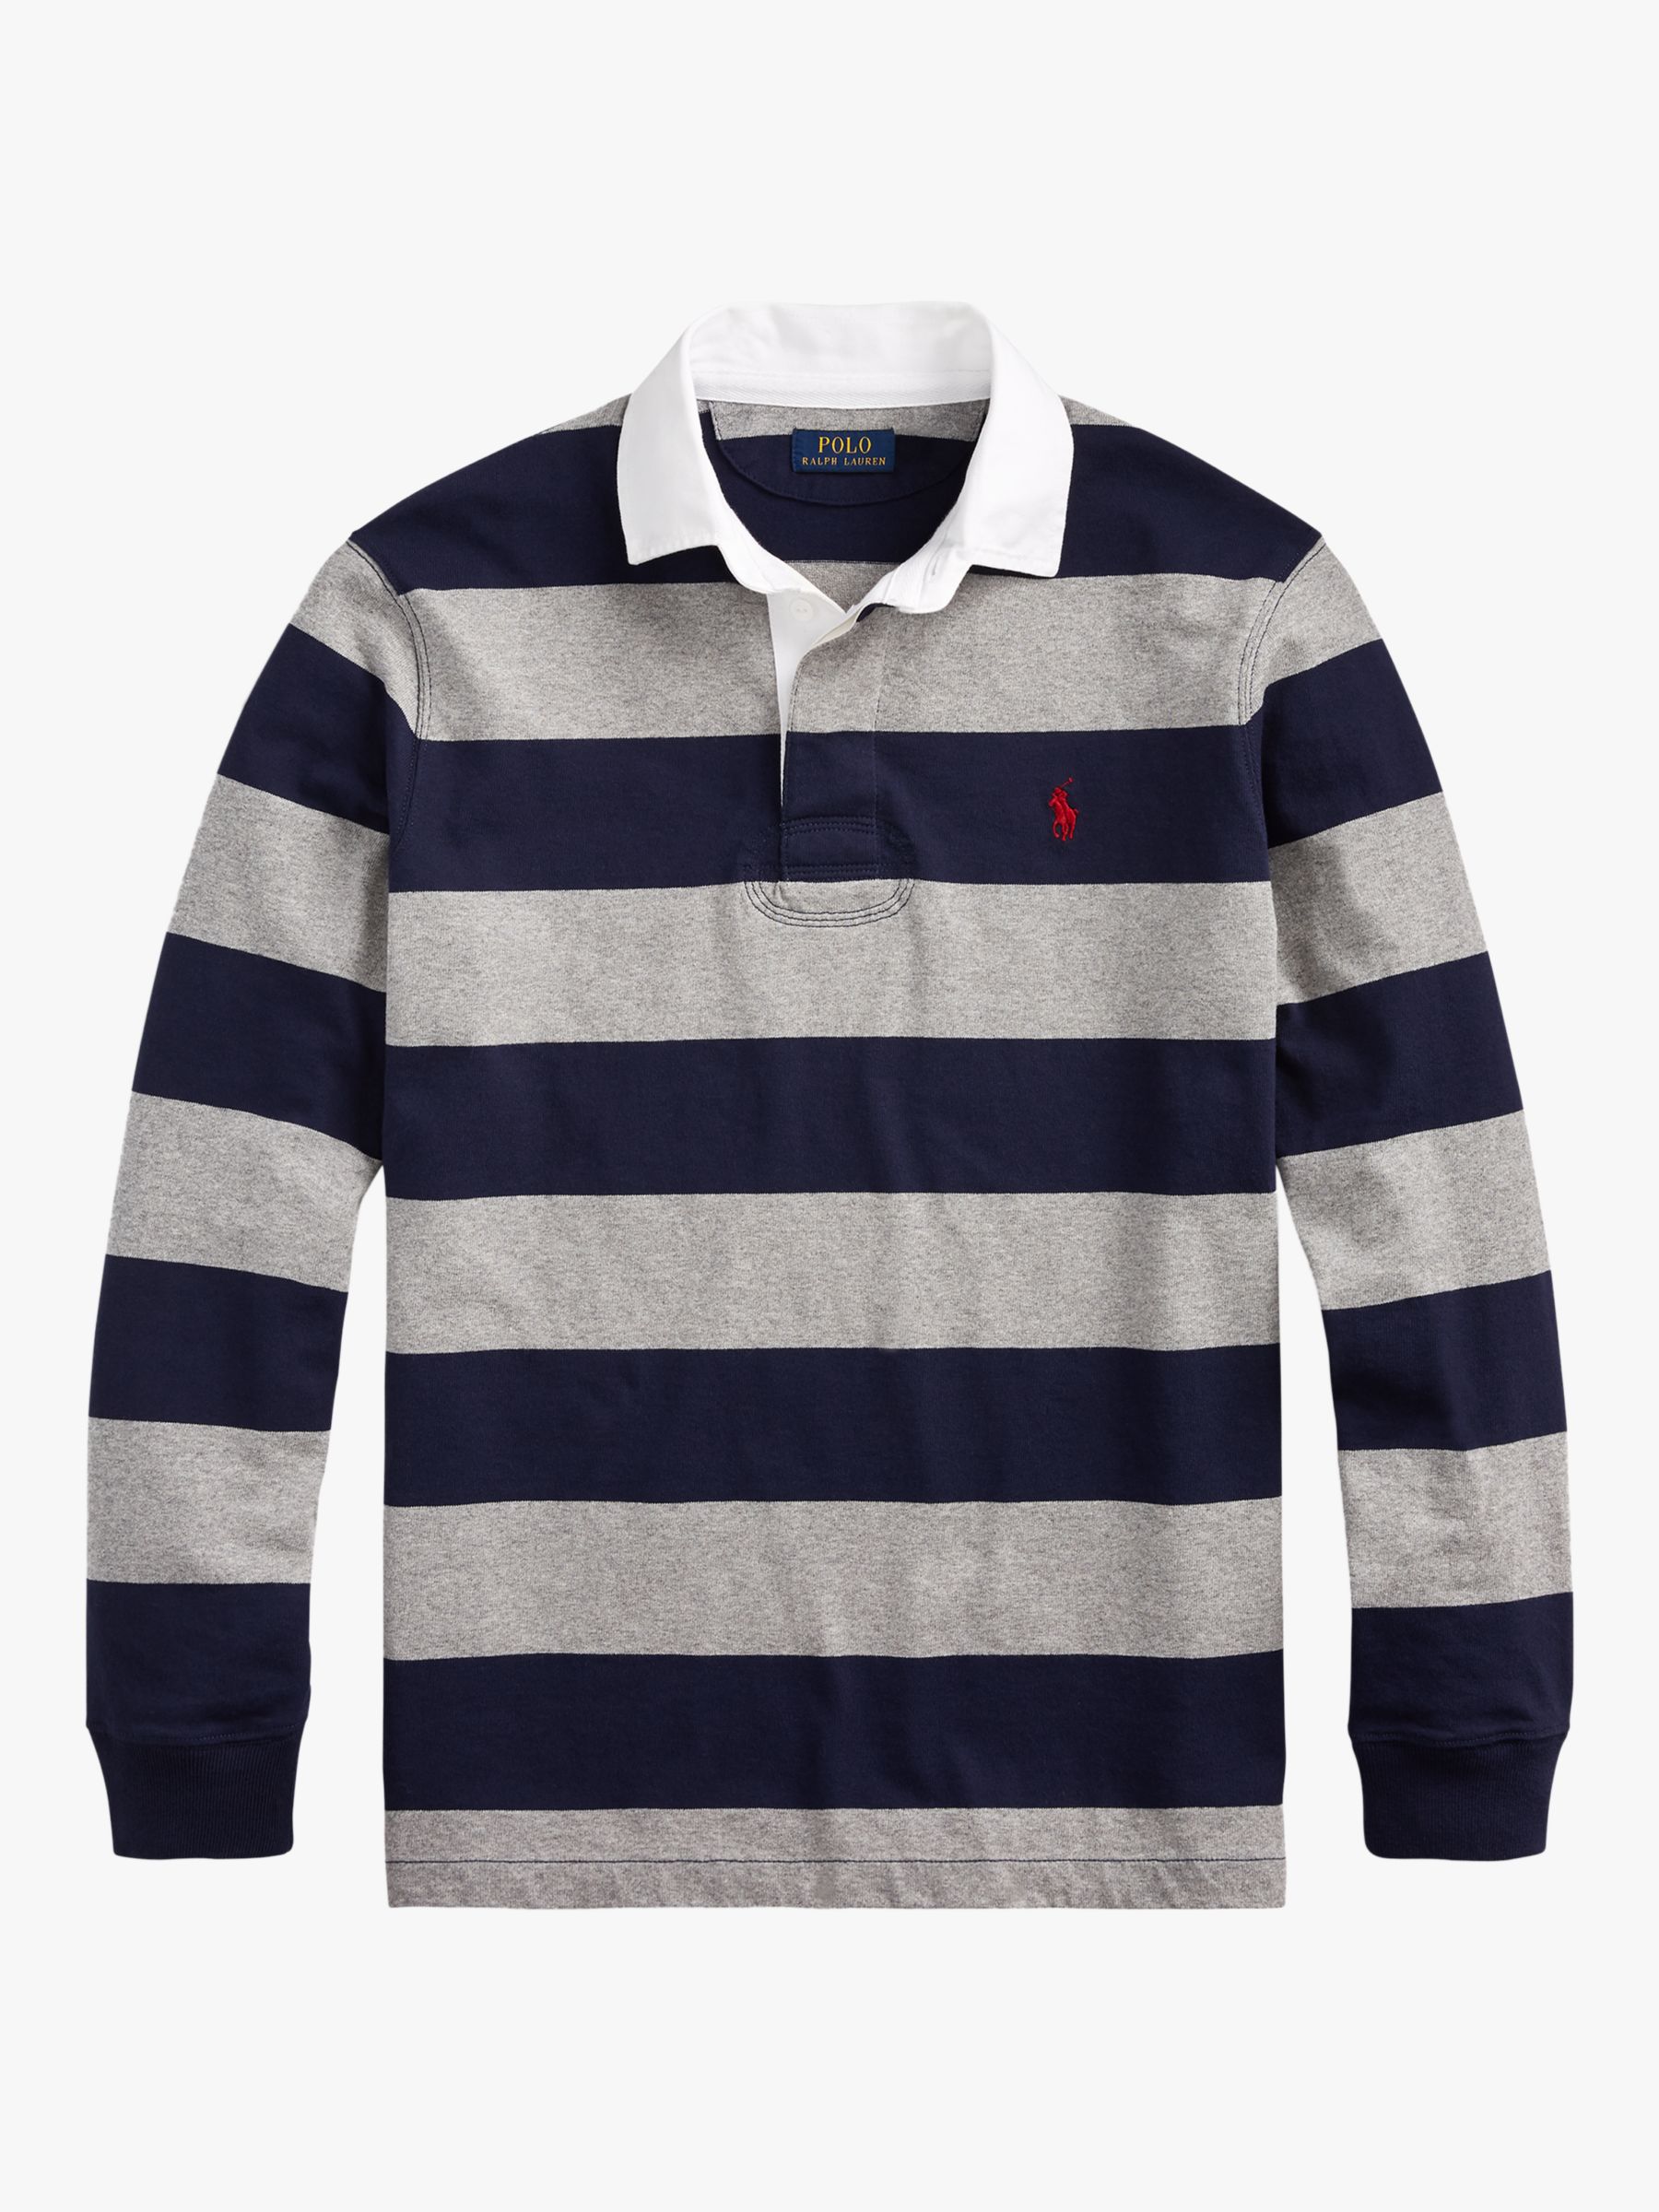 Polo Ralph Lauren Stripe Rugby Shirt, League Heather/Navy, XXL